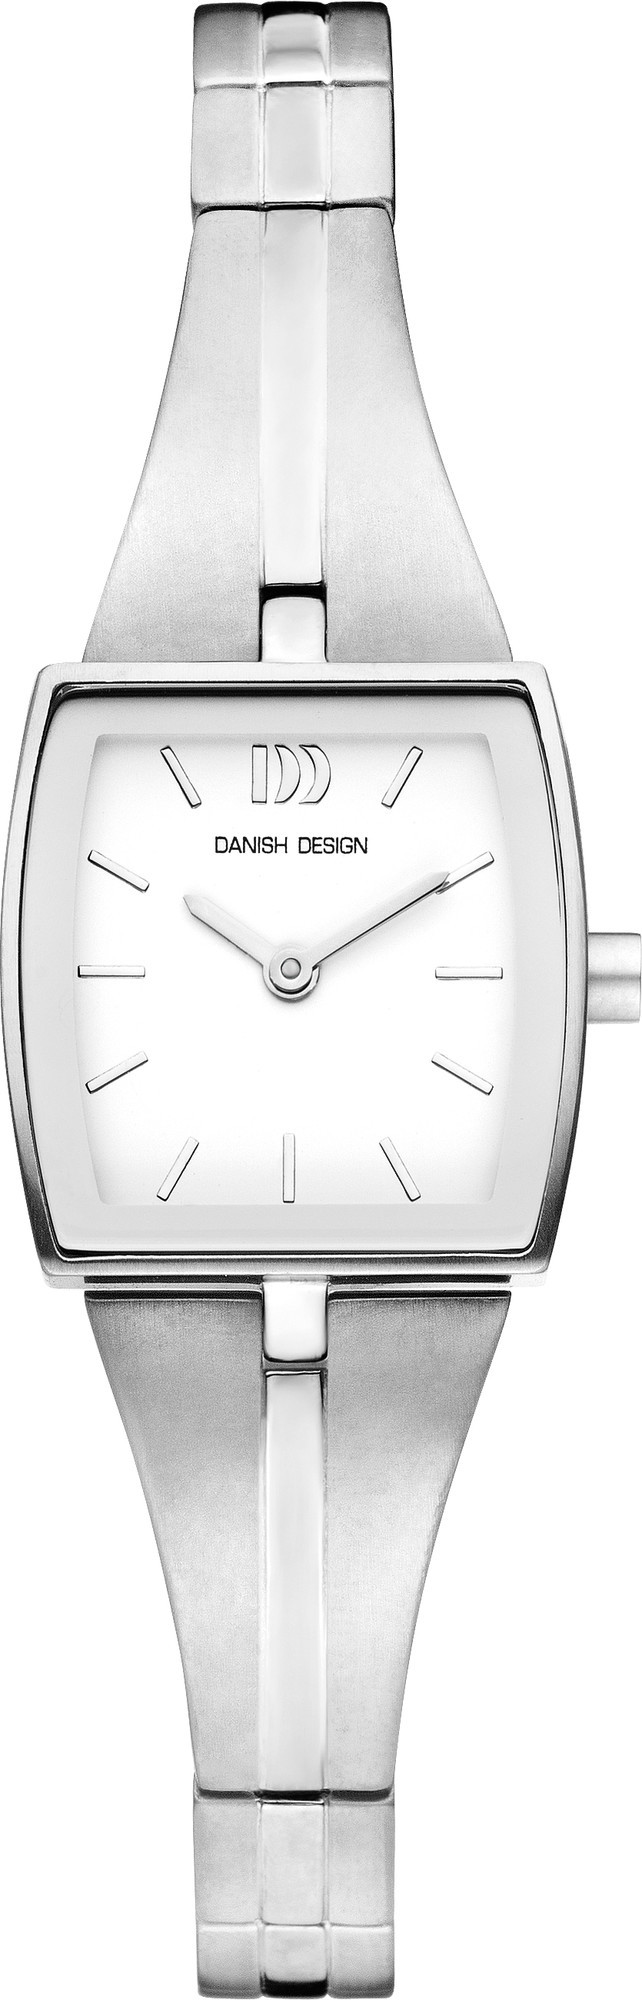 Danish Design Horloge 22 mm Titanium IV62Q1087 1